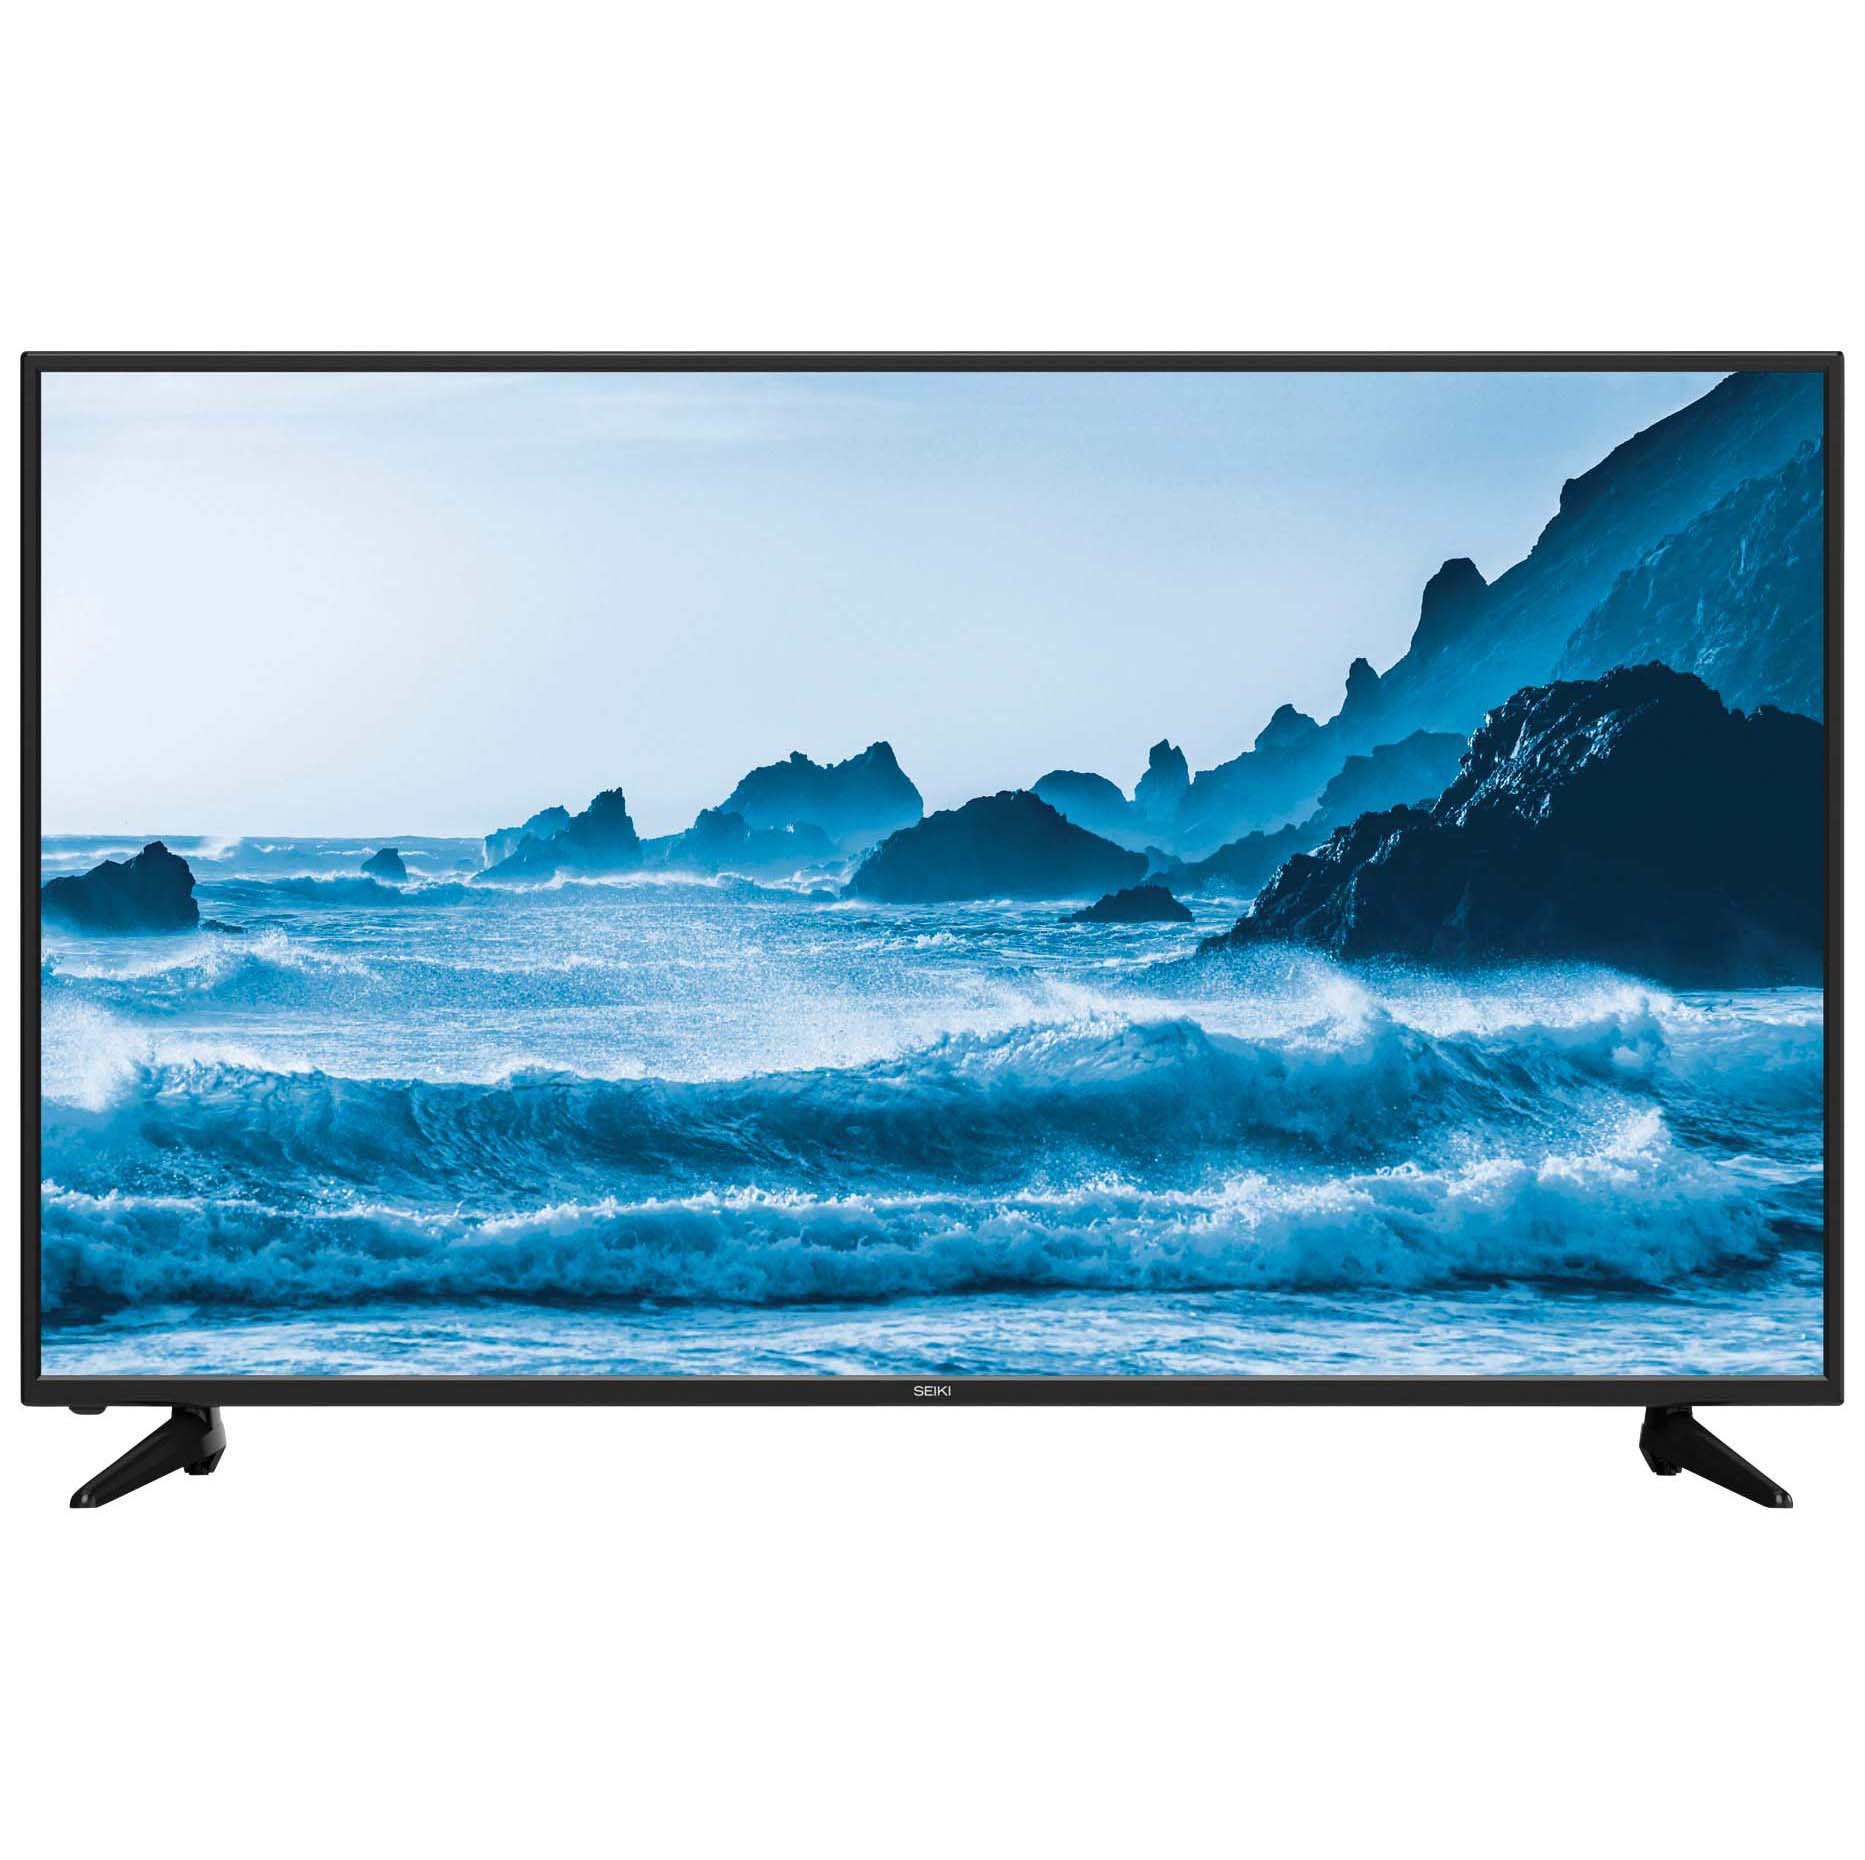 Телевизоры смарт лед. Sony 32 Smart TV. Телевизор Sony Smart TV Price 50 inch. Samsung 50 inch TV.